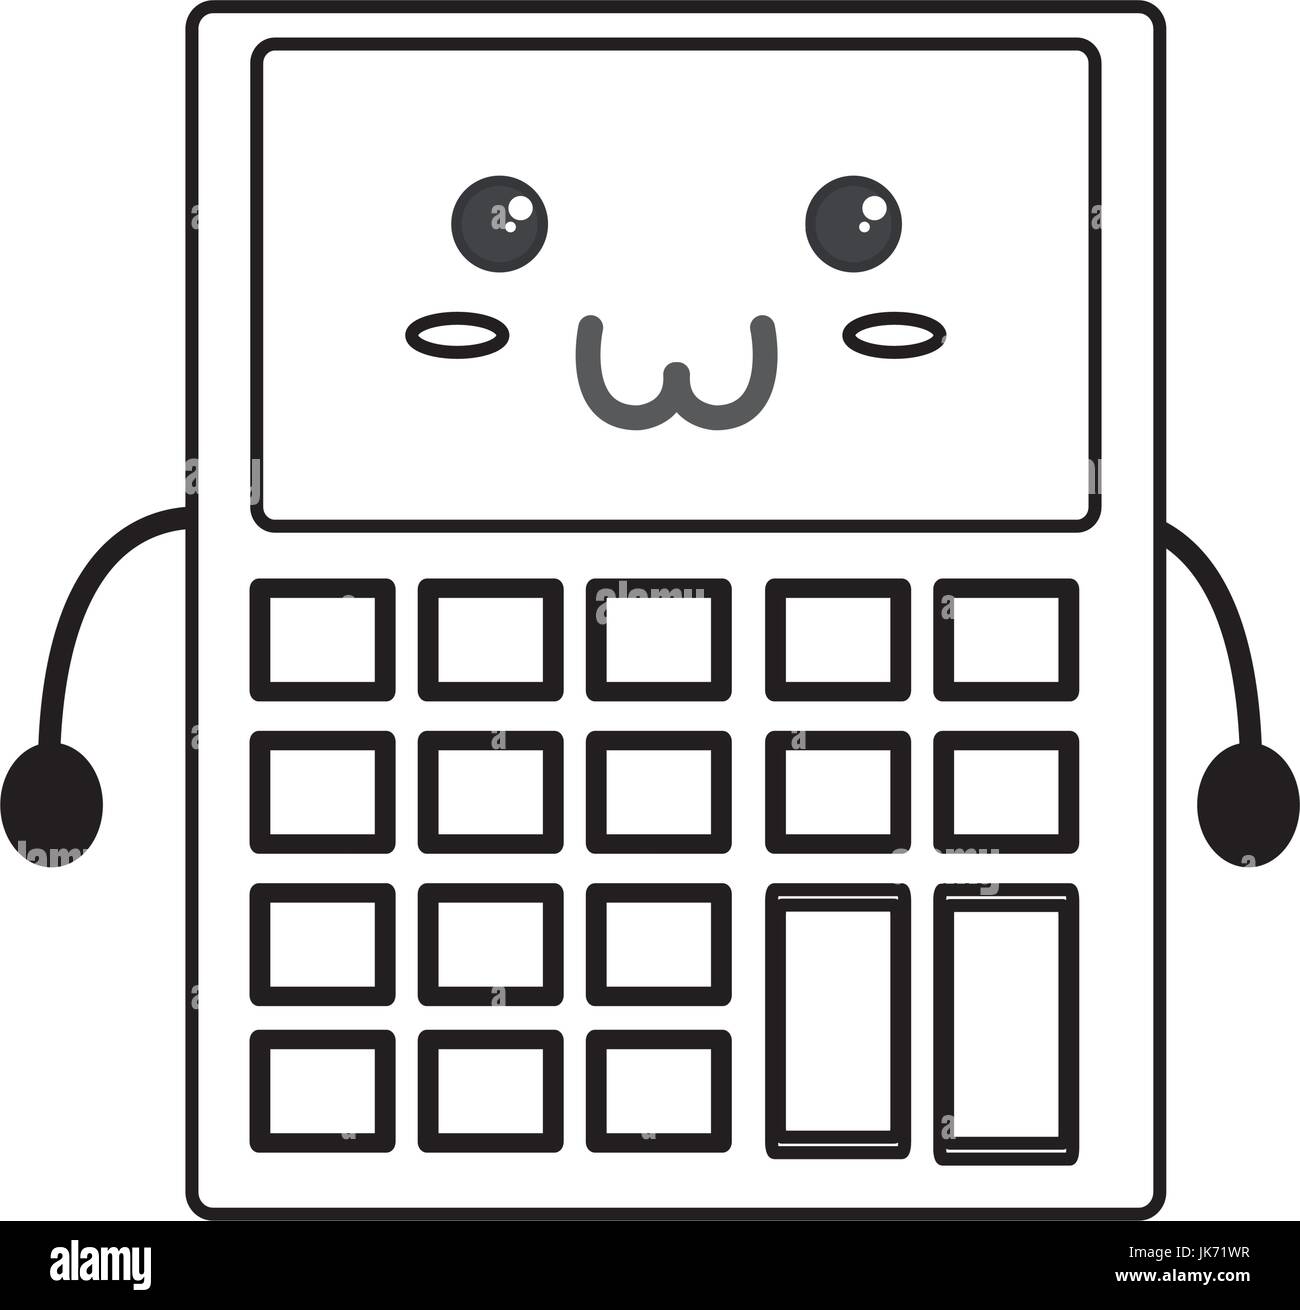 Calculadora Cute kawaii Imagen Vector de stock - Alamy